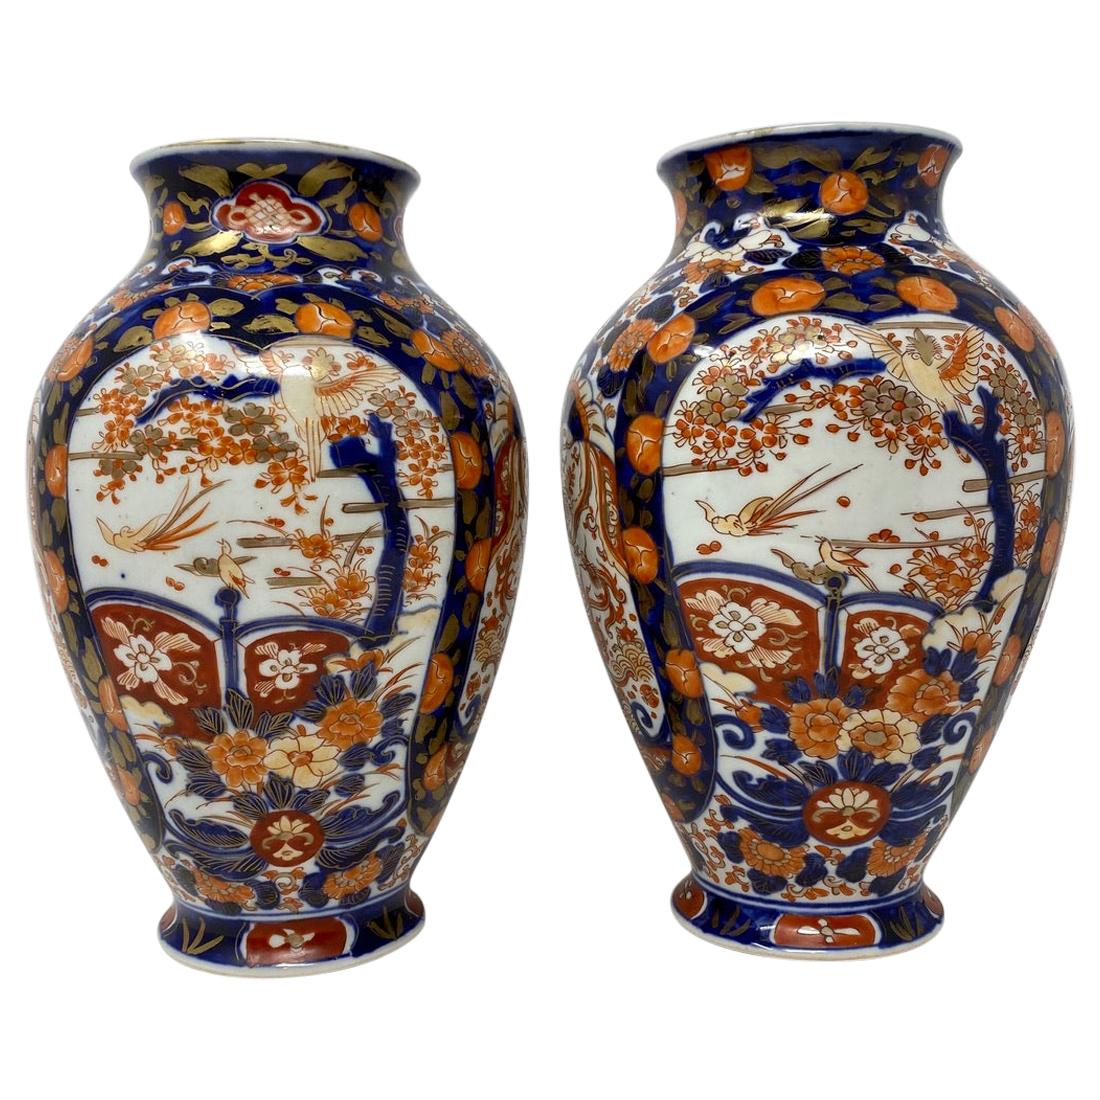 Paar antike japanische Imari-Vasen, um 1860-1870